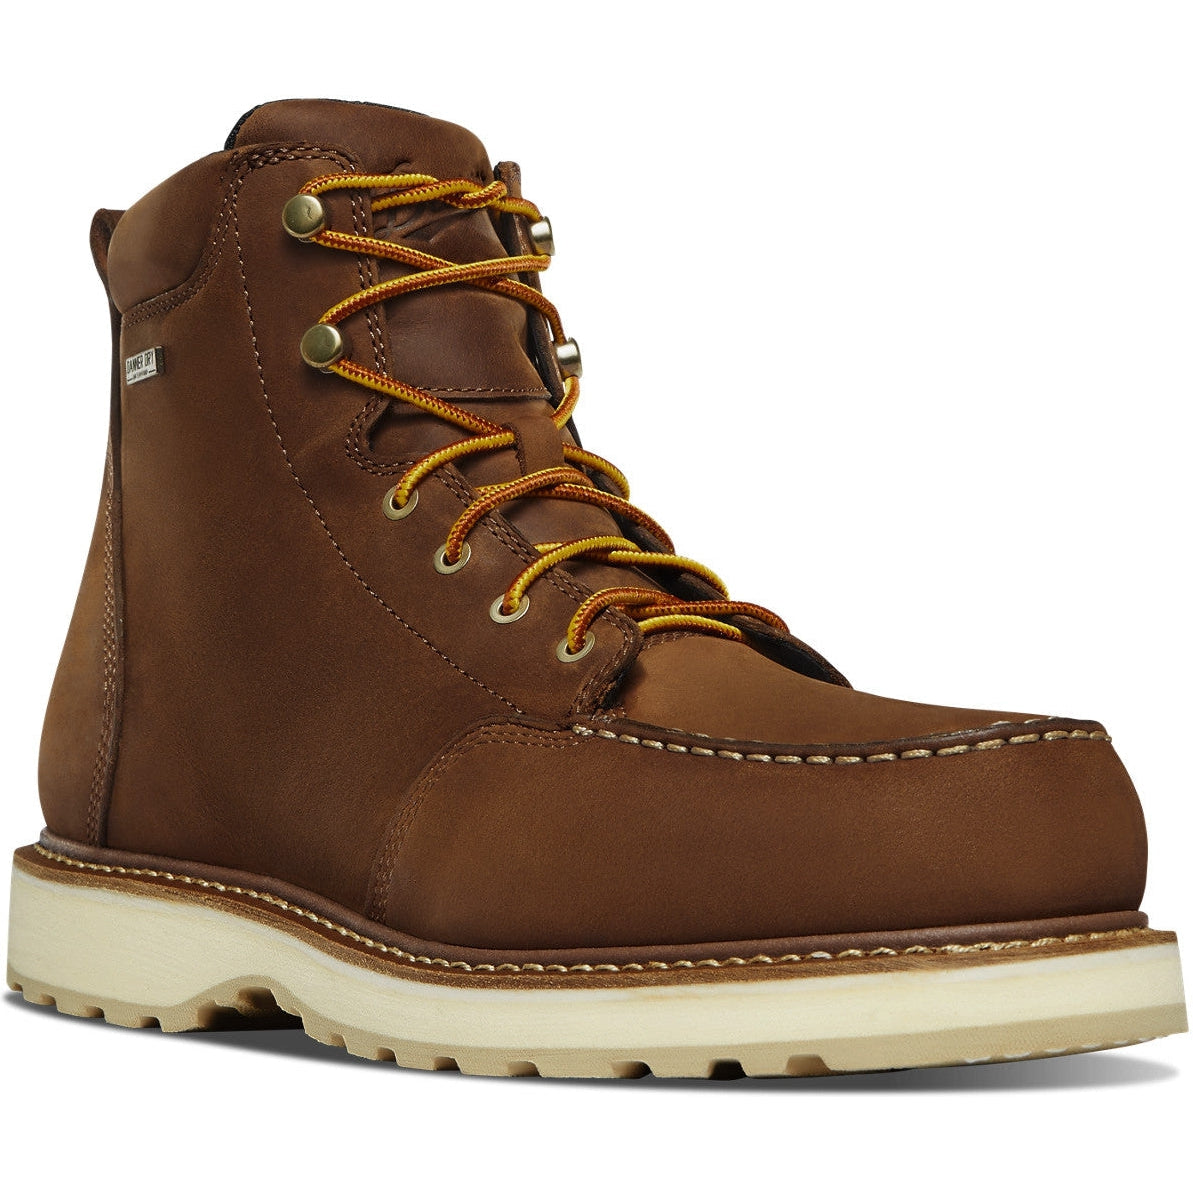 Danner Men's Cedar River 6" WP Soft Moc Toe Work Boot - Brown - 14300 7 / Medium / Brown - Overlook Boots